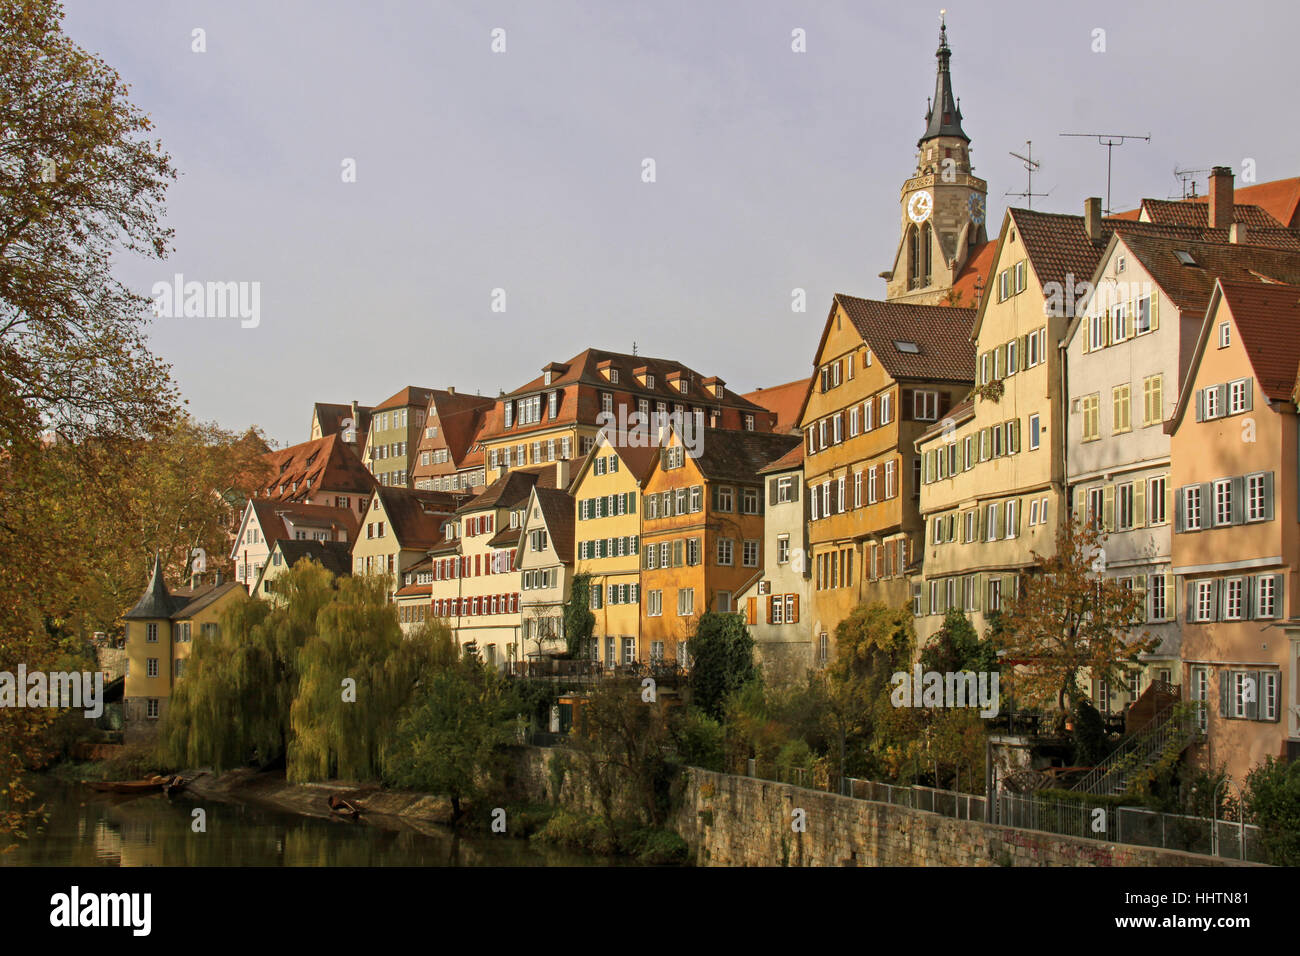 Vista de la ciudad, emblema, la colegiata, la torre, históricos, turísticos, romántico, Foto de stock